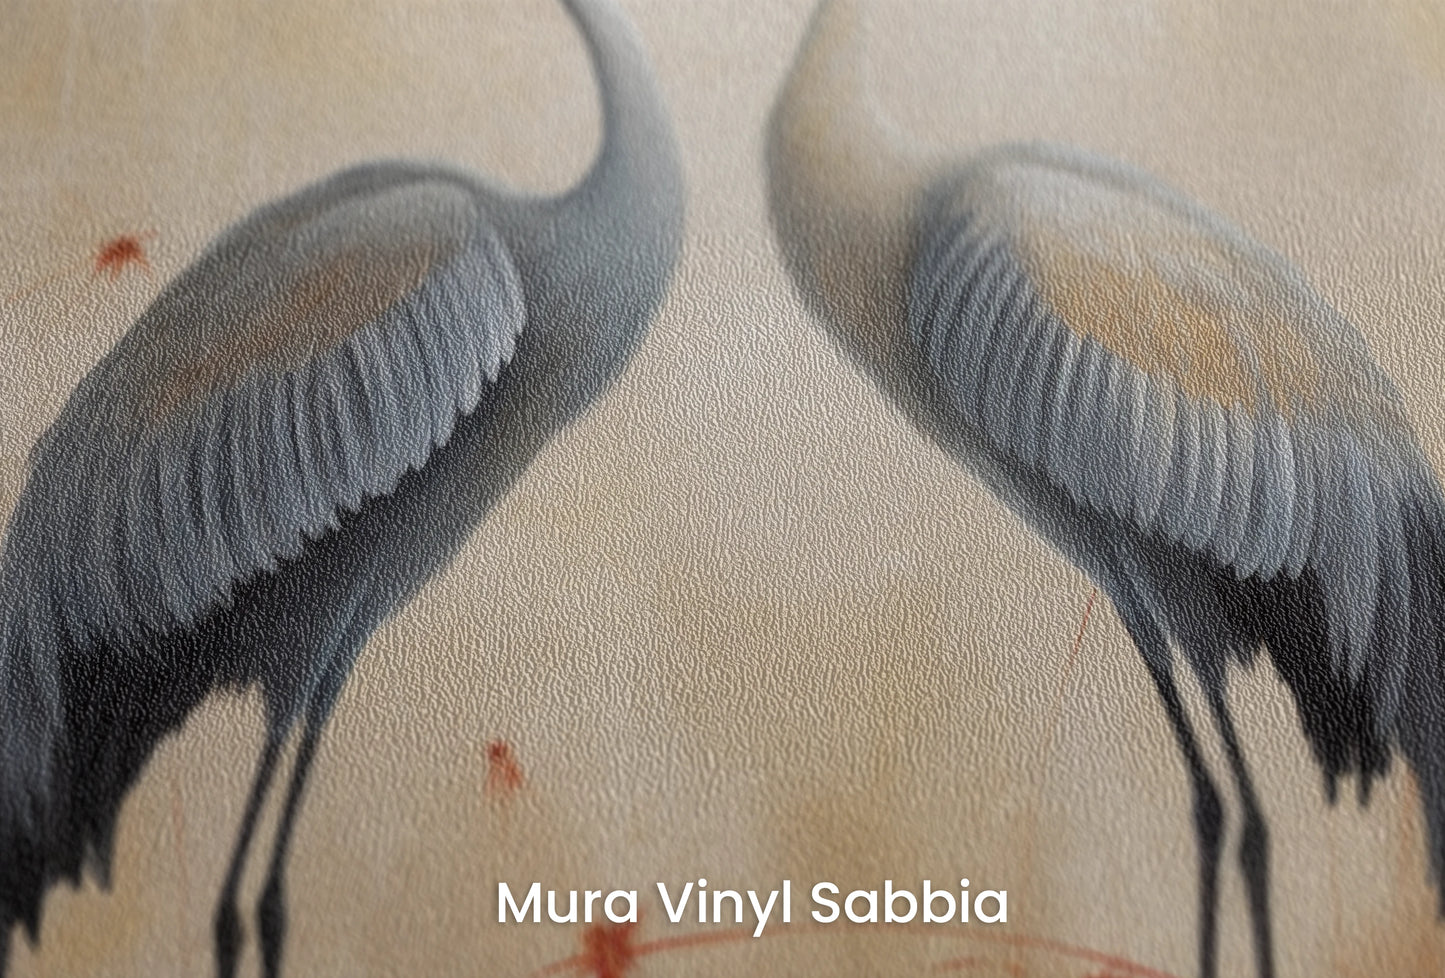 Zbliżenie na artystyczną fototapetę o nazwie Serene Steps na podłożu Mura Vinyl Sabbia struktura grubego ziarna piasku.